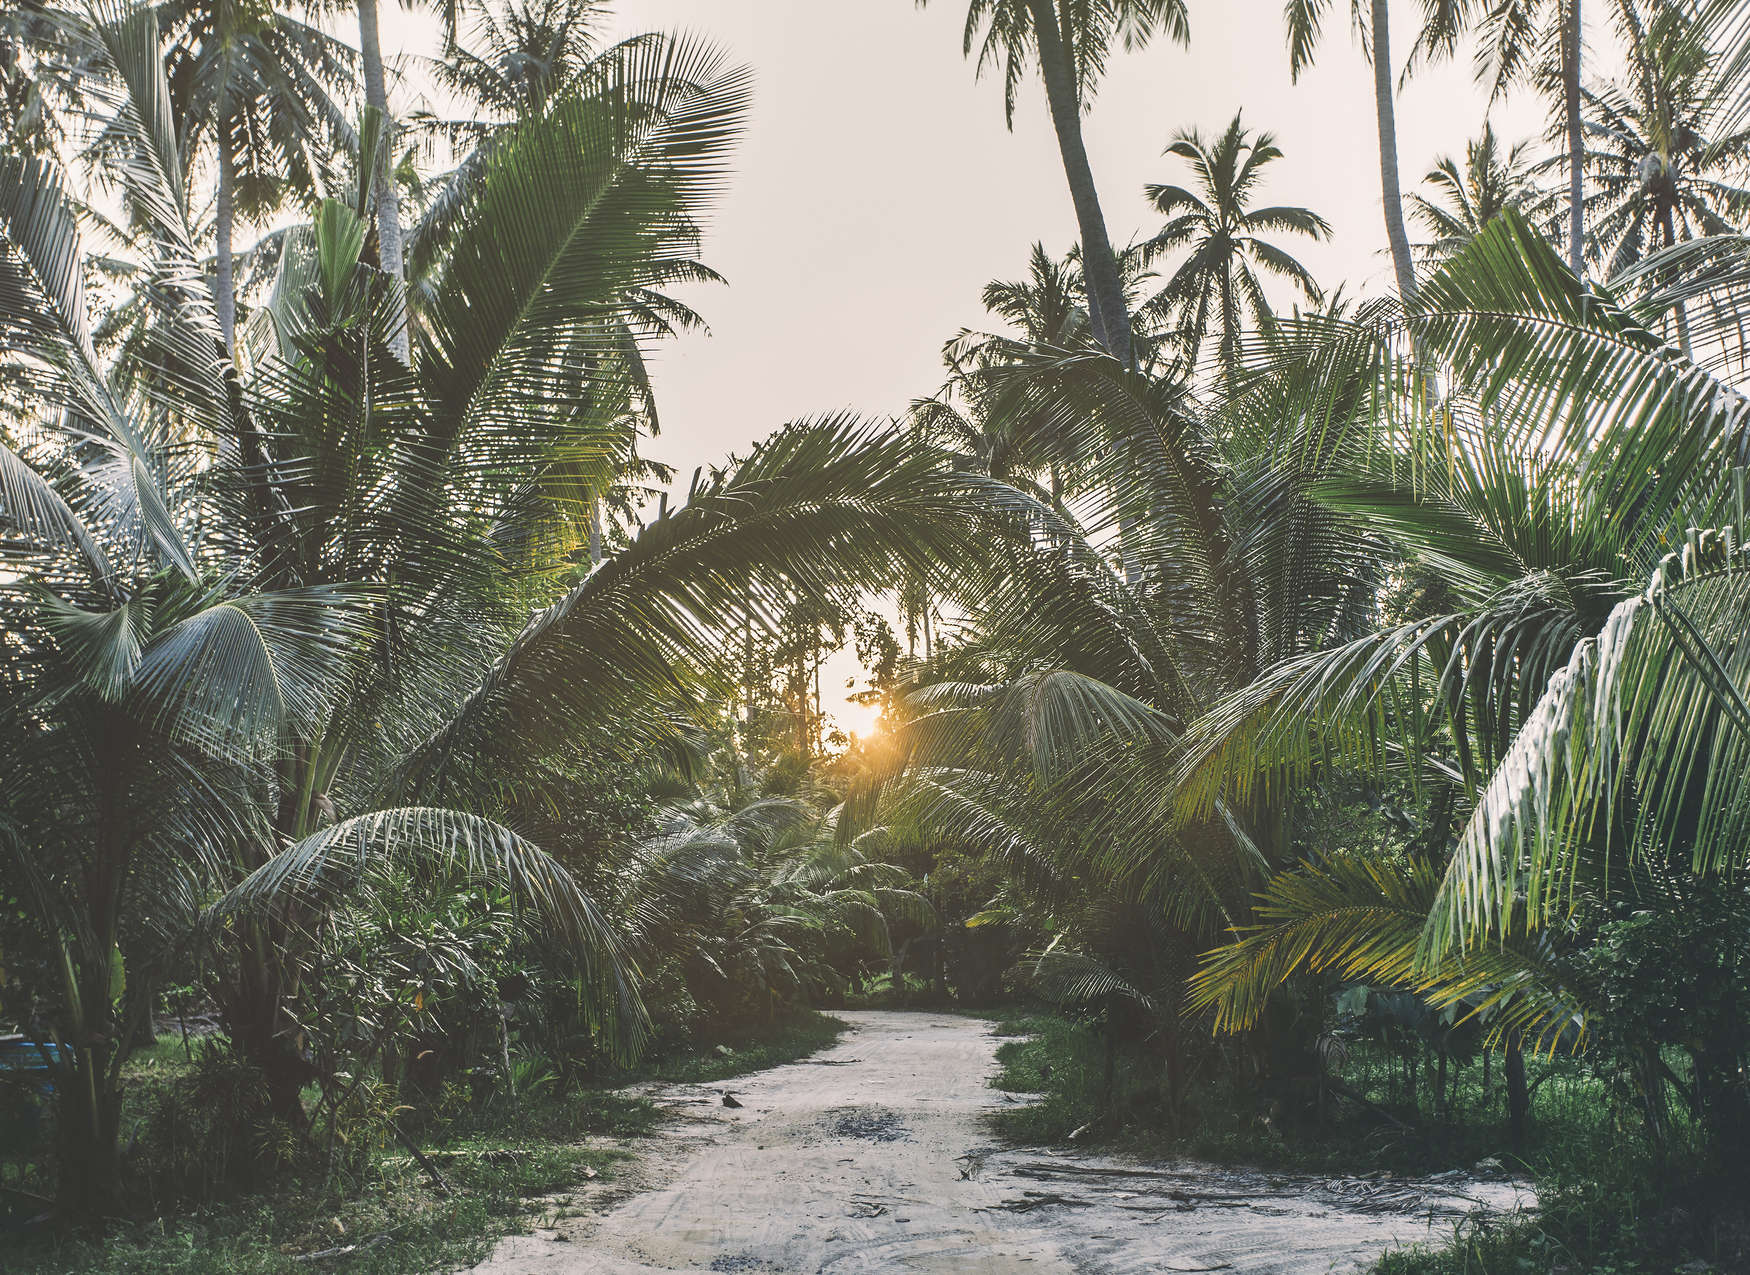             Fototapete mit Weg durch einen tropischen Dschungel – Grün, Beige, Gelb
        